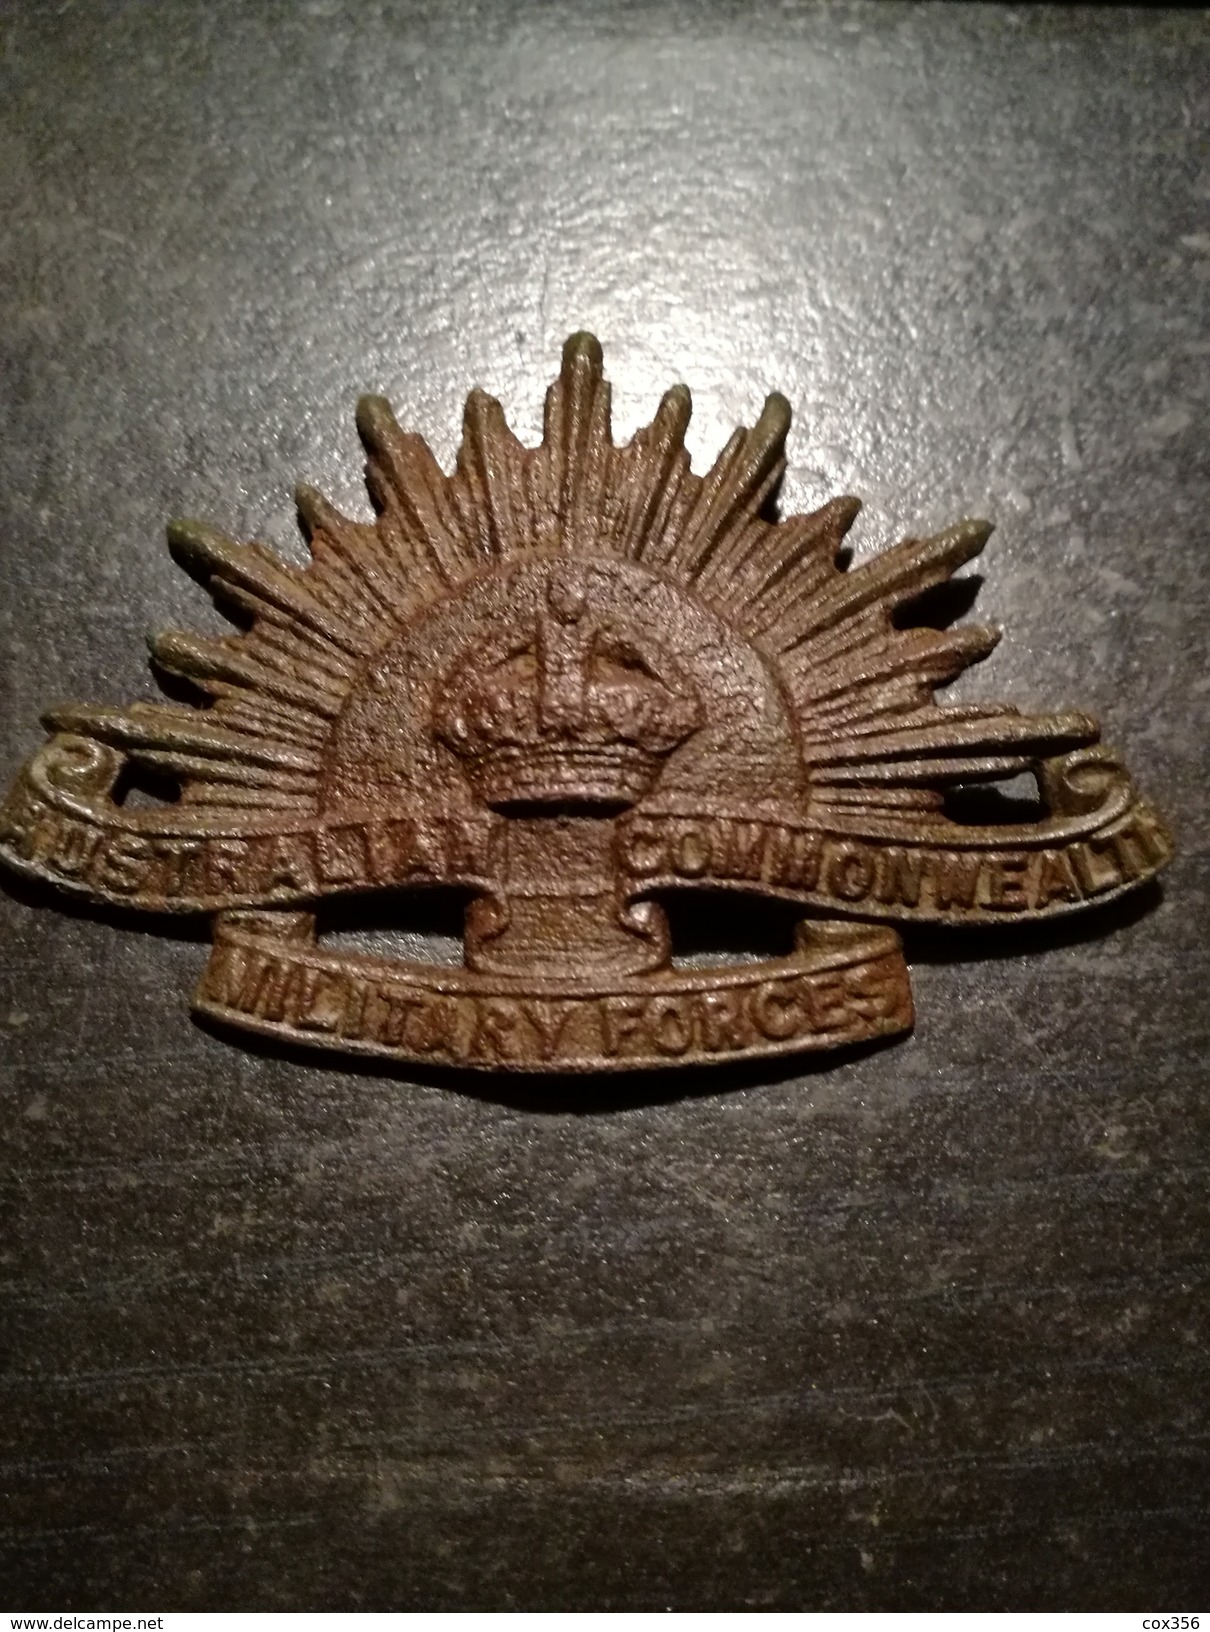 Badge Australian Commonwealth Military Forces Objet De Fouille - Grossbritannien